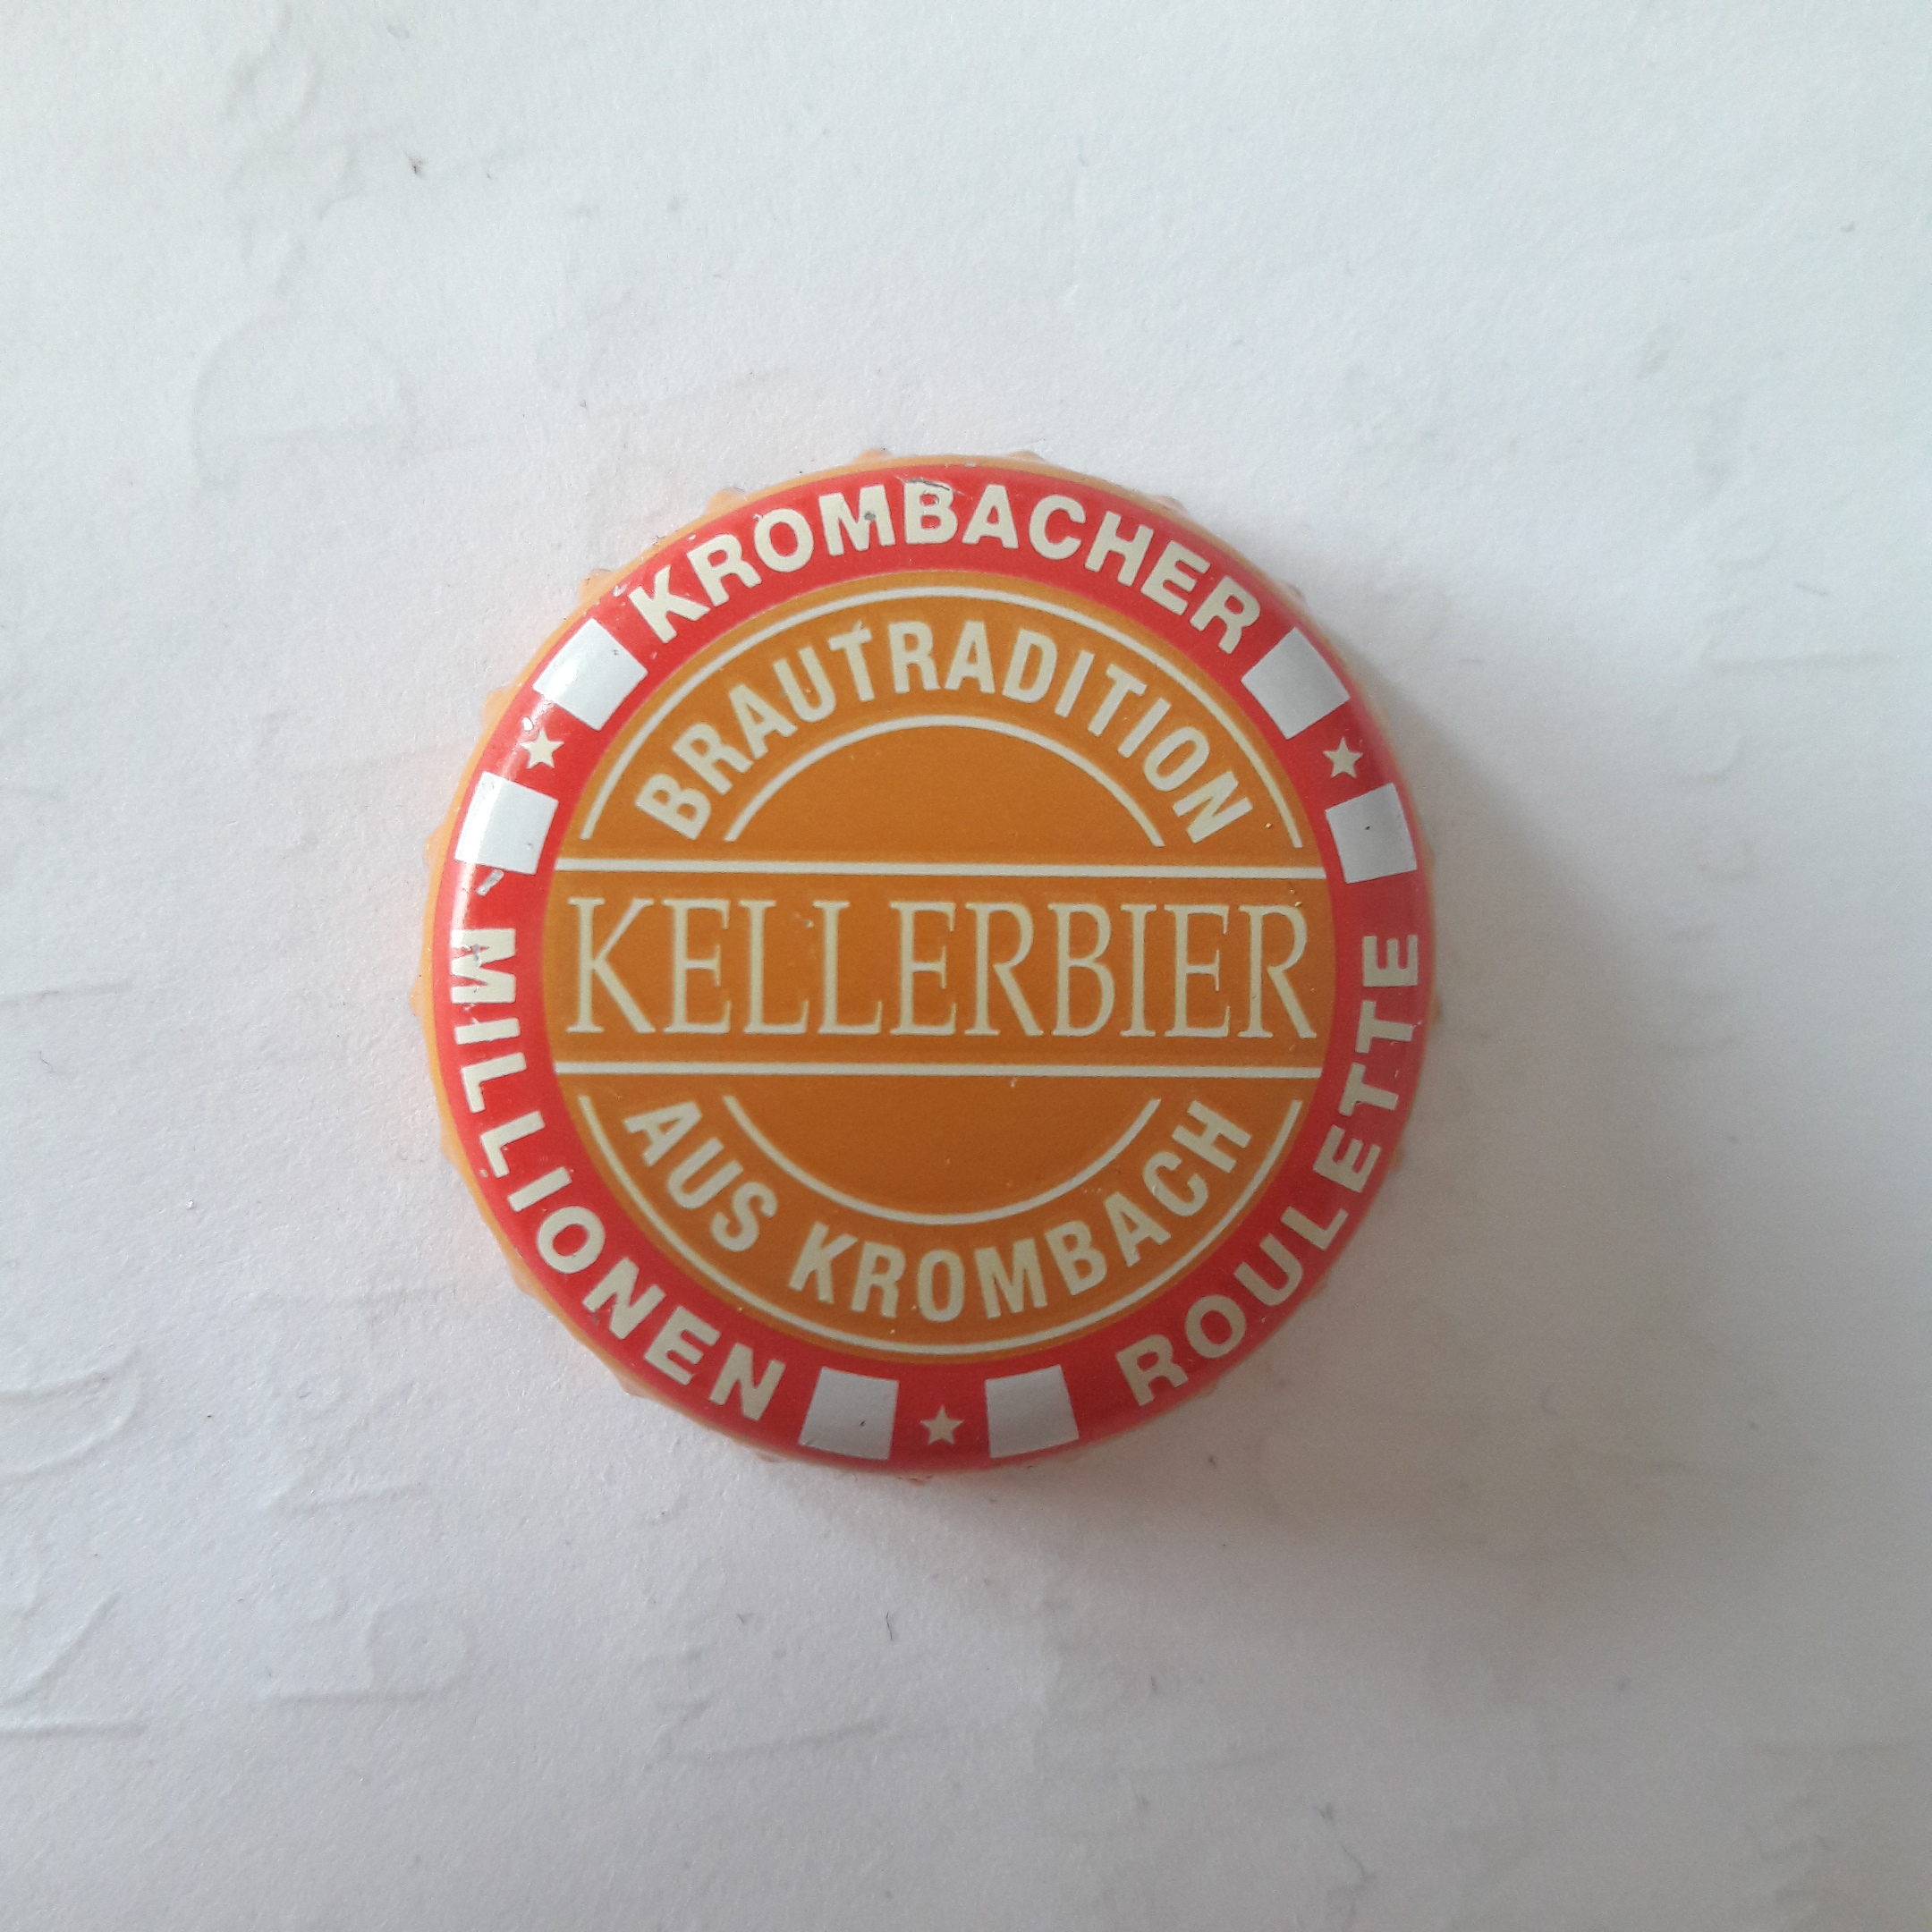 Krombacher Kellerbier Aktion 2018